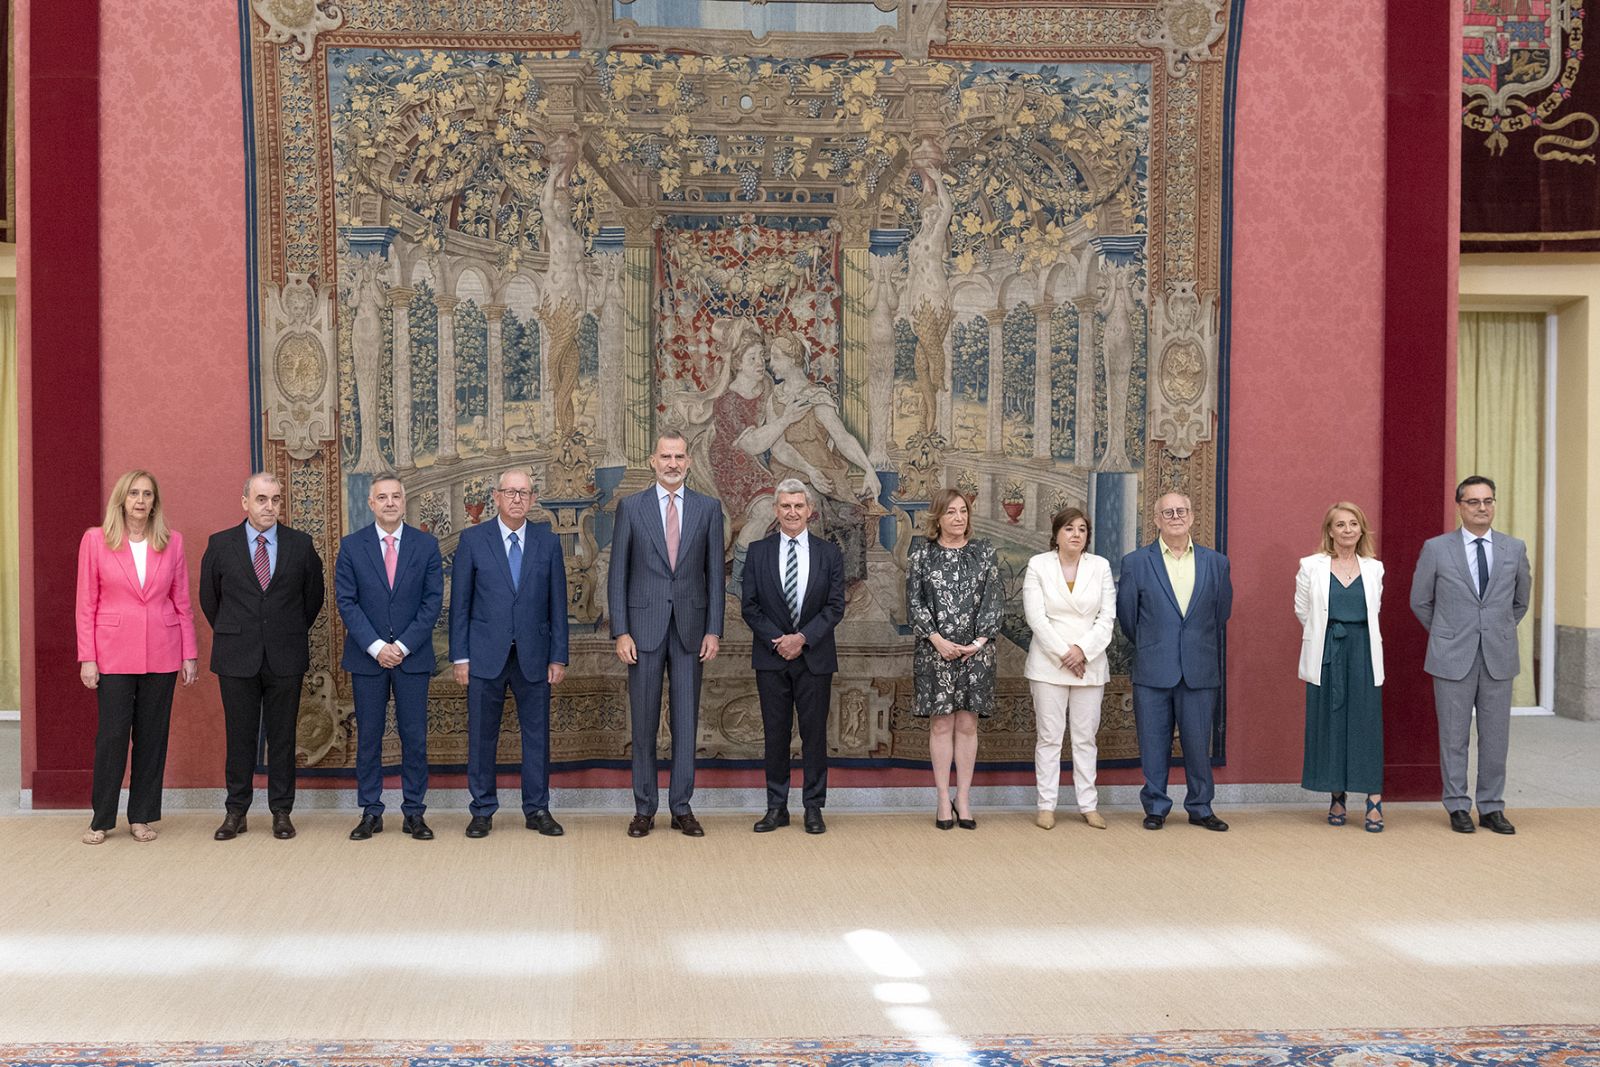  Audiencia Consejo Administracion RTVE en el Palacio Real de El Pardo